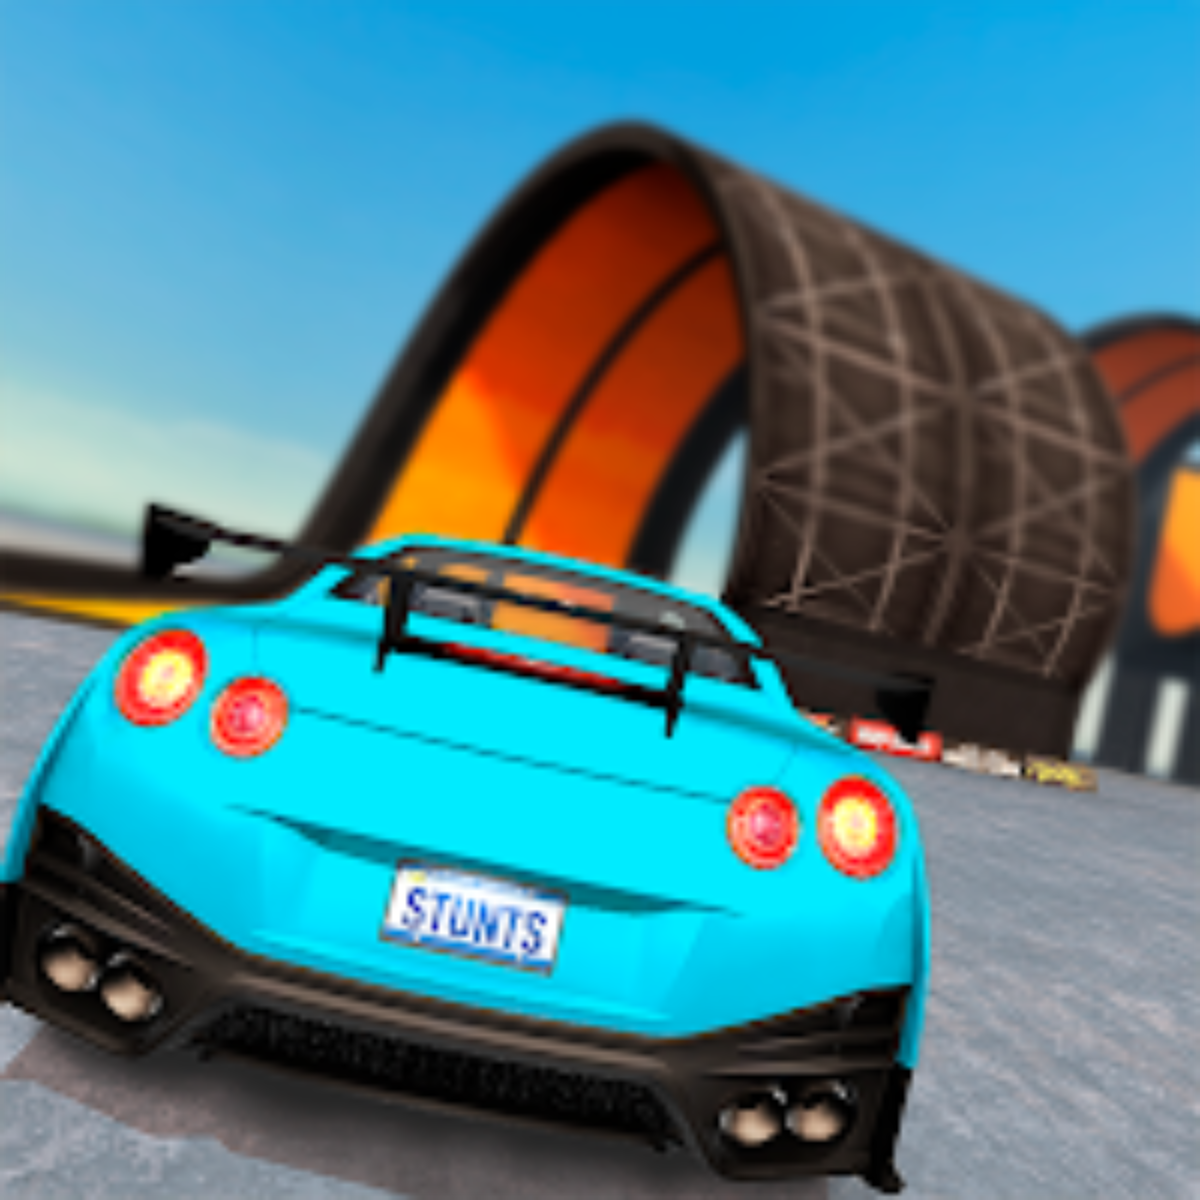 Extreme Car Driving Simulator MOD APK V6.82.1 [Dinheiro Infinito